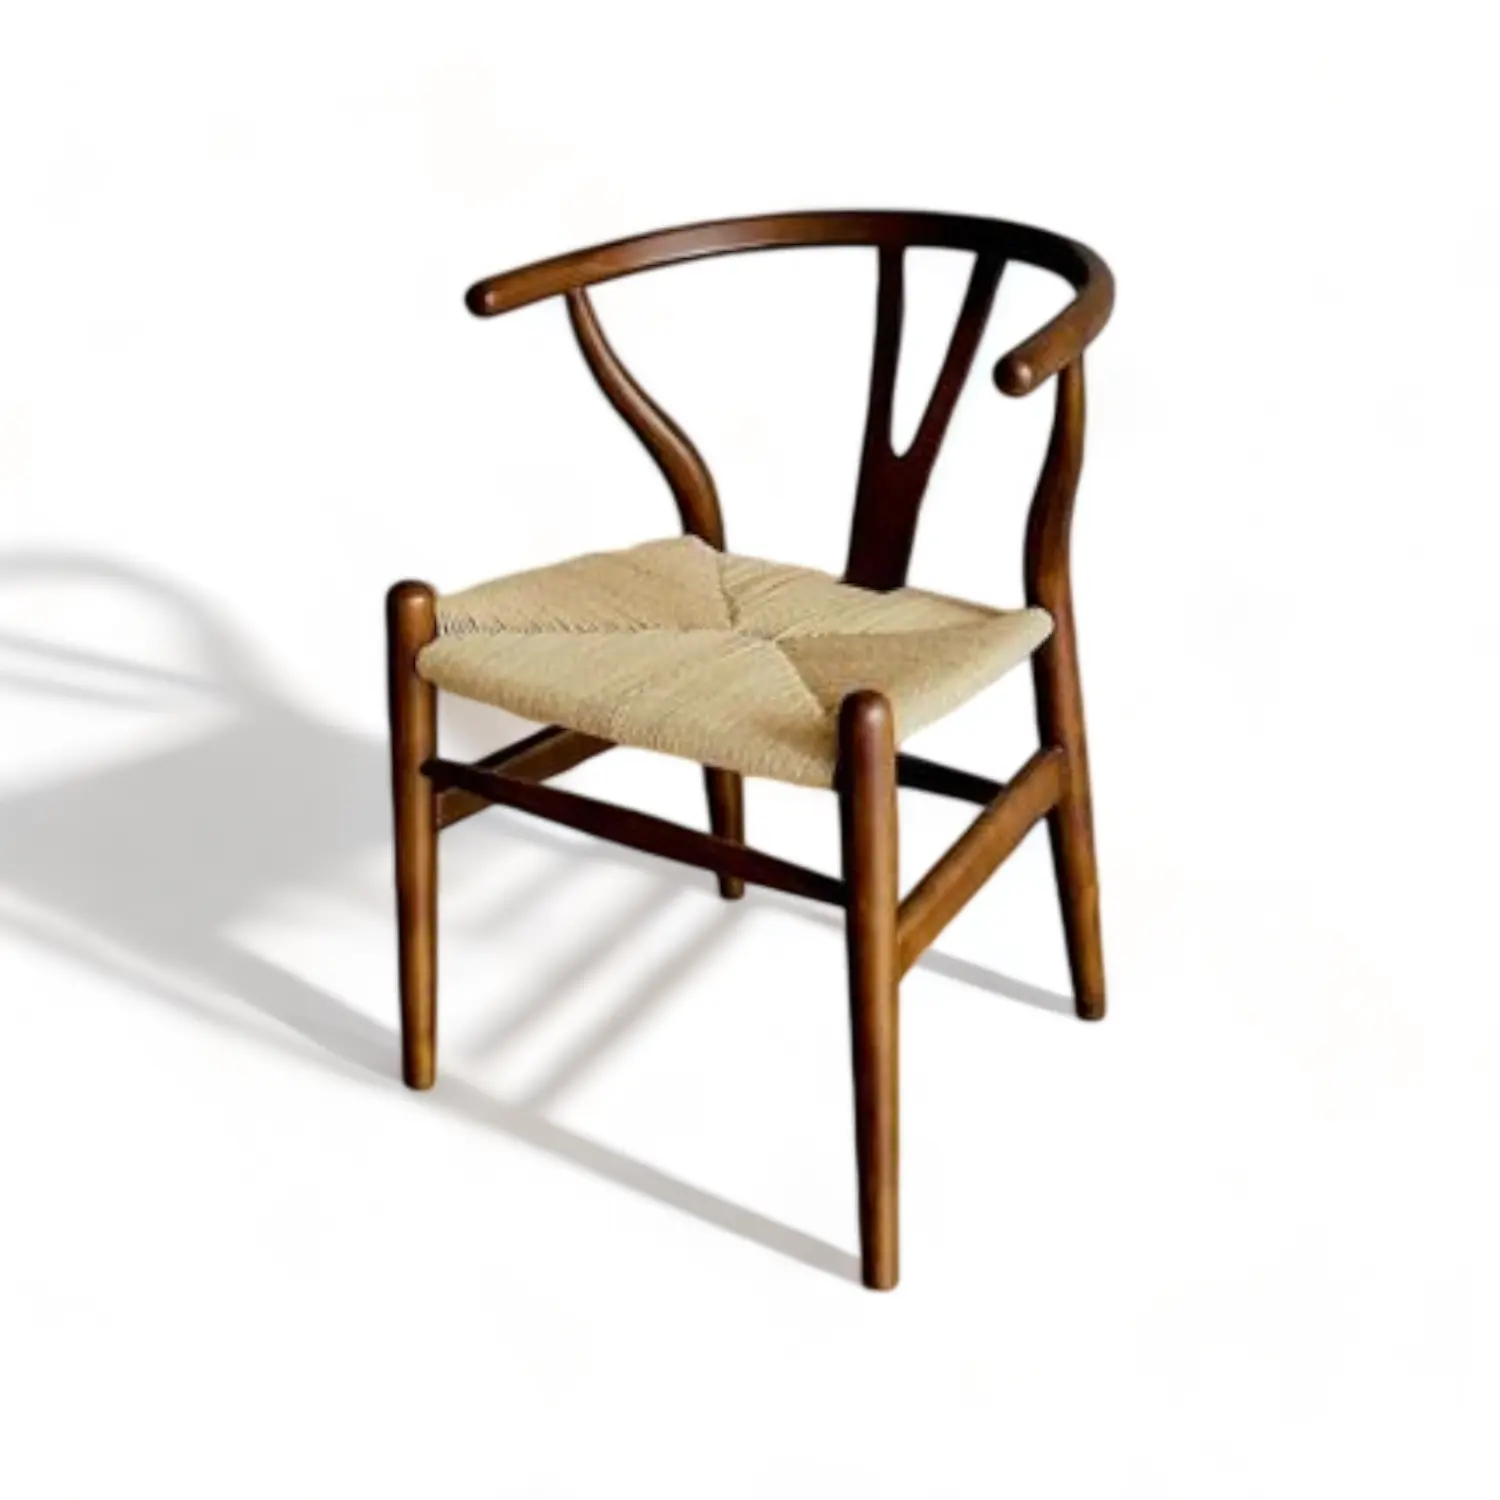 เก้าอี้รับประทานอาหารไม้สักเนื้อแข็งออกแบบ Wishbone ของ Hans Wegner ที่ทันสมัยราคาขายส่งสําหรับใช้ในร้านกาแฟและบาร์สําหรับชุดร้านอาหาร